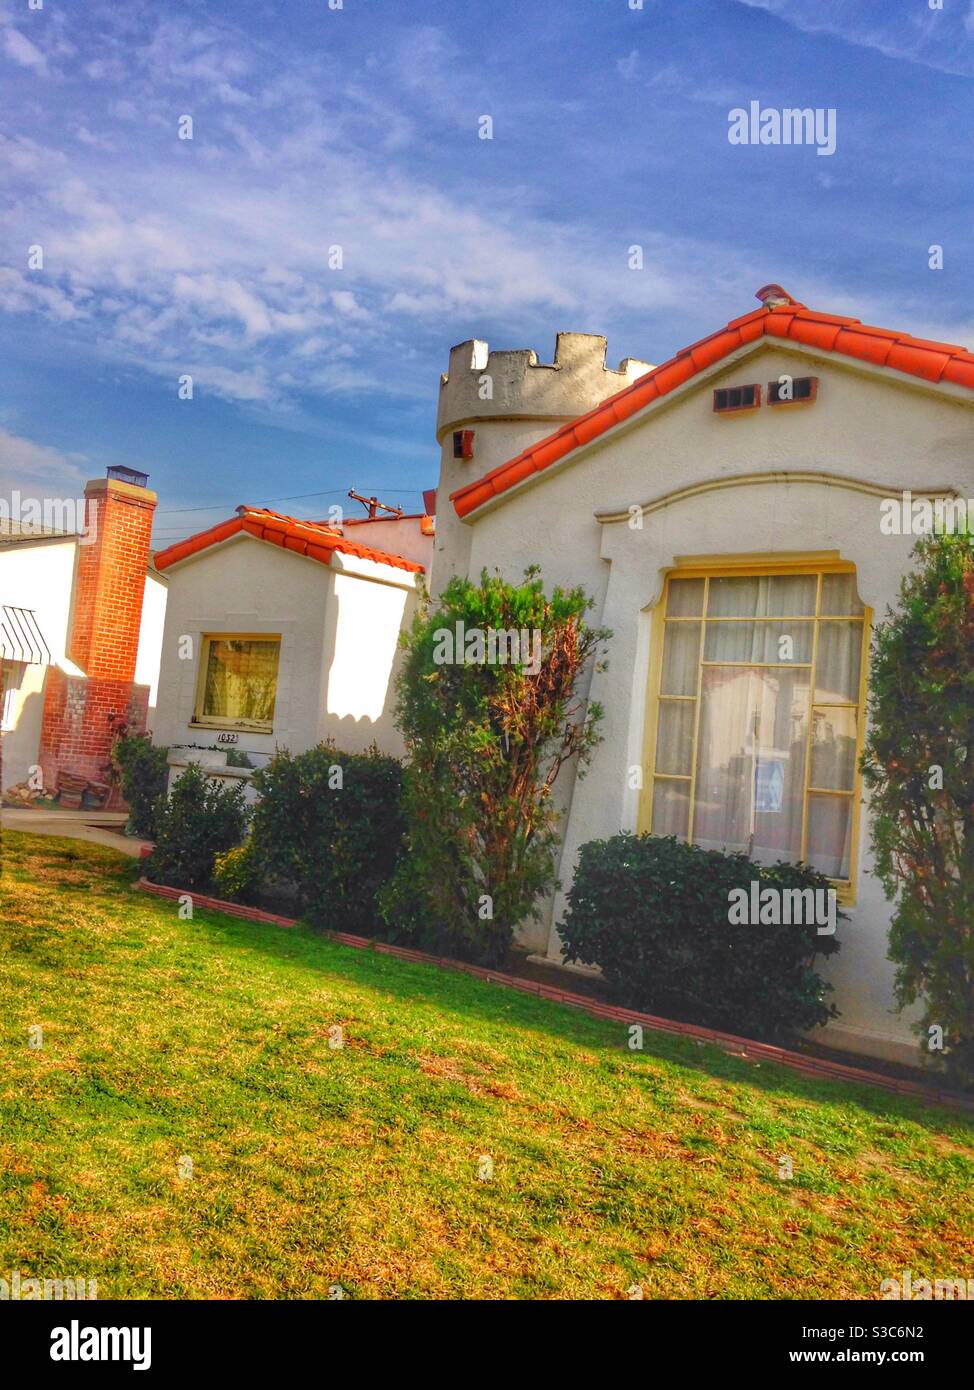 Chi non vorrebbe possedere una casa con una torretta? In particolare una adorabile casa in stile spagnolo della California con stucco bianco e tetto tegole rosse nella California meridionale, Glendale, Los Angeles, USA Foto Stock